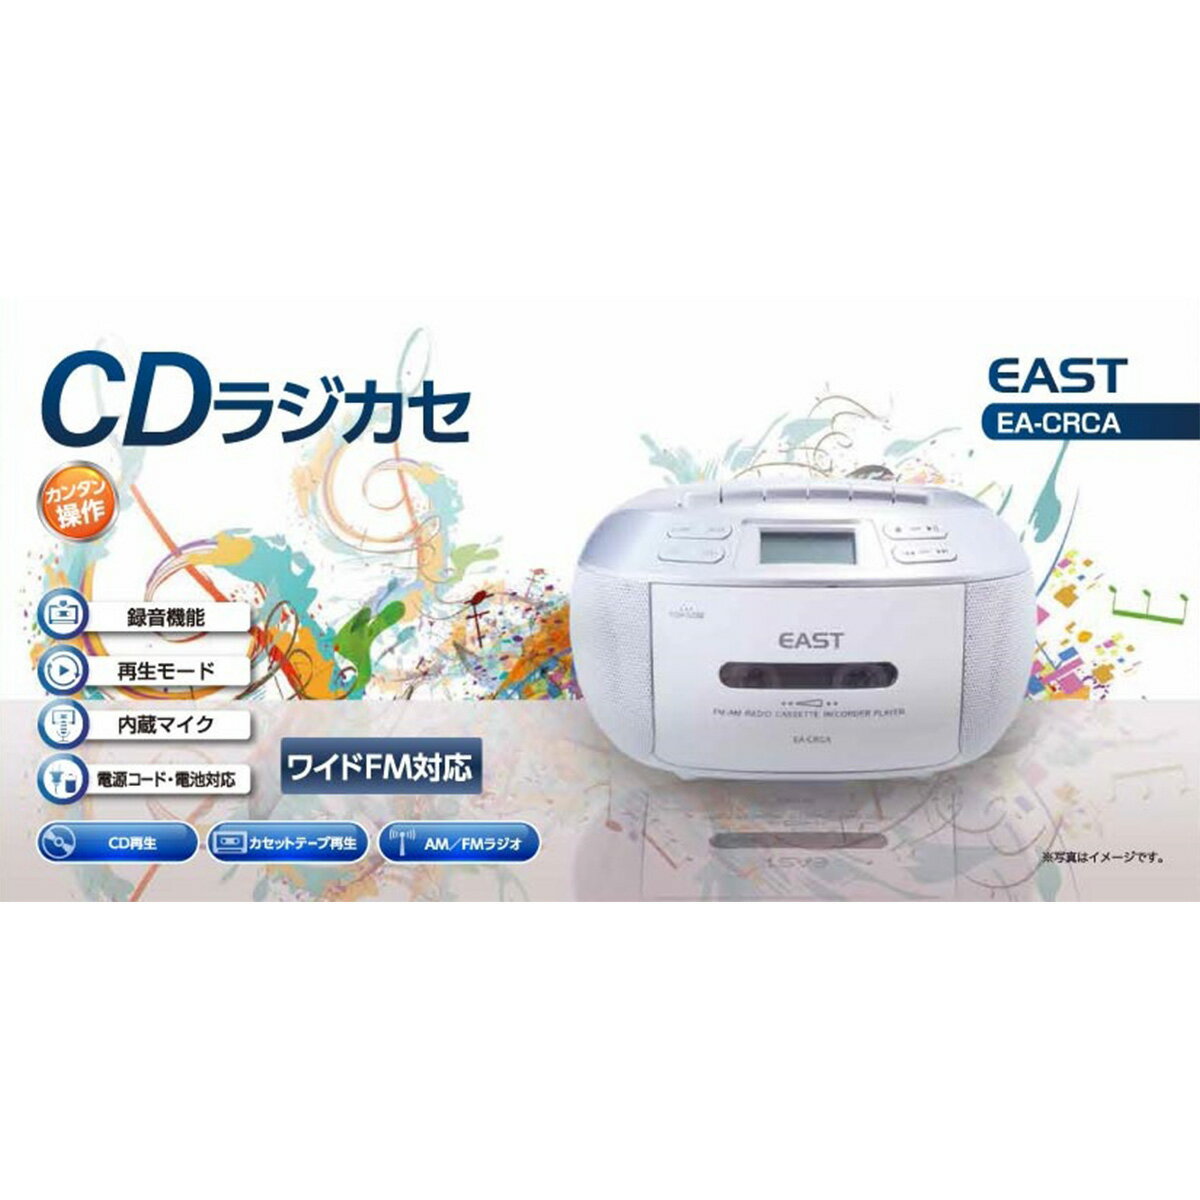 アズマ CDラジカセ EA-CRCA / CD再生、カセット